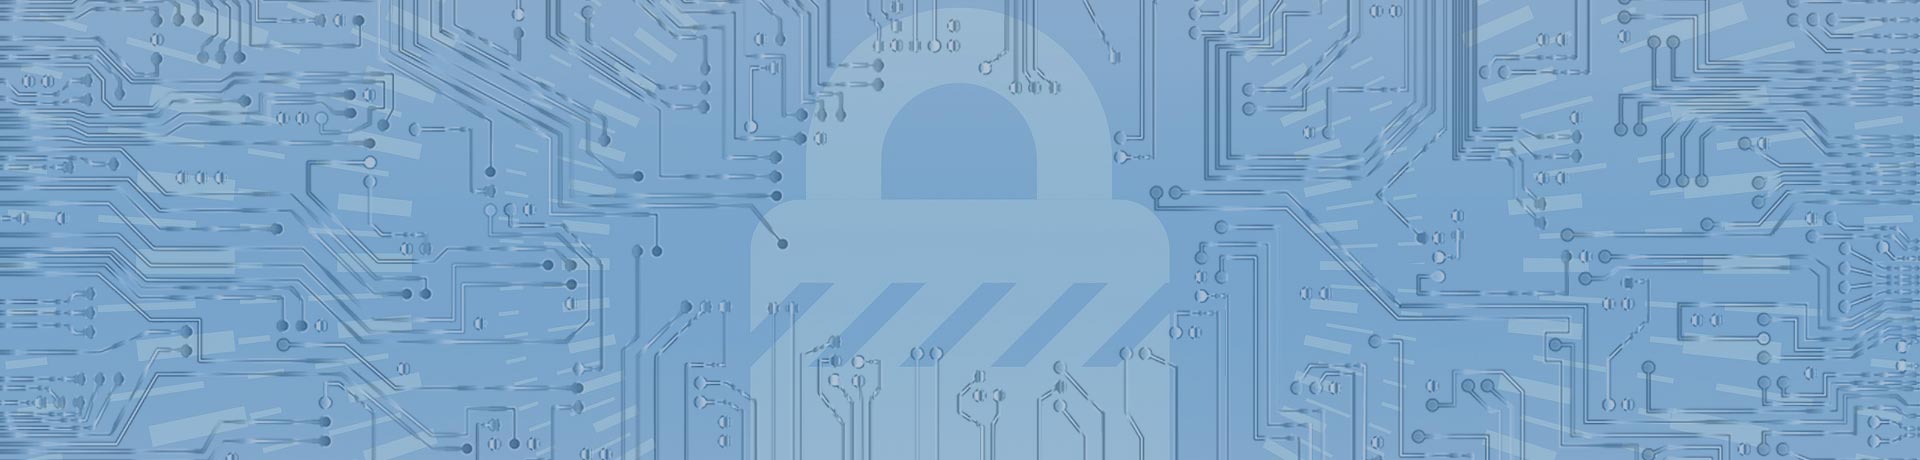 Cybersécurité : Apave acquiert les sociétés OPPIDA et LSTI et lance sa plateforme de gestion et de prévention des risques numériques